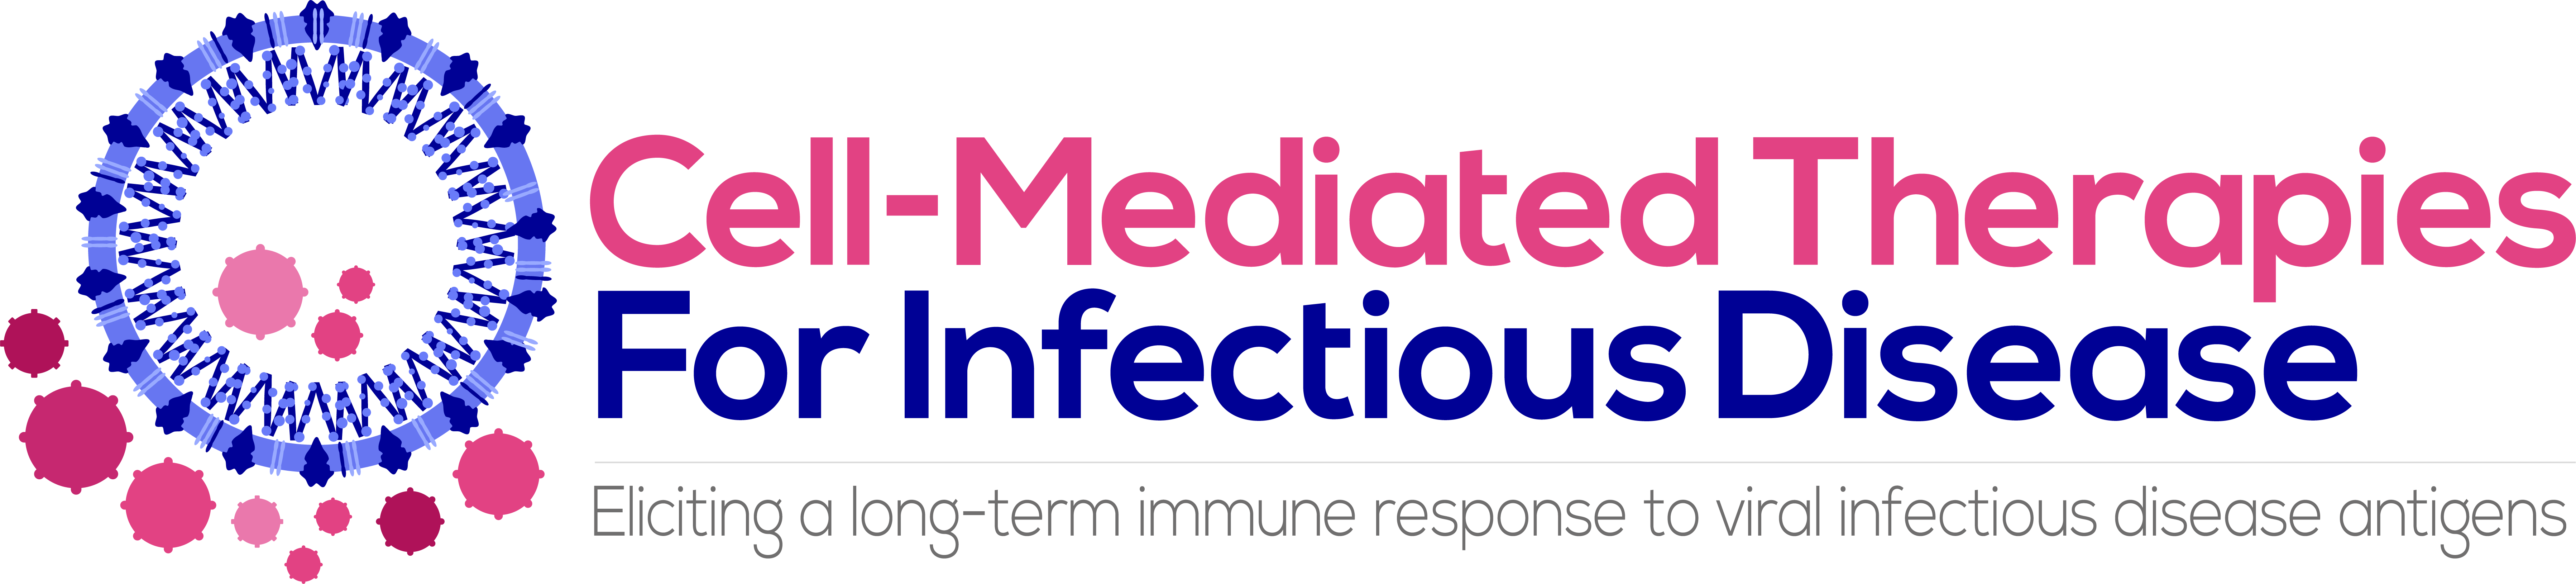 21021 ΓÇô Cell-Mediated Therapies For Infectious Disease logo